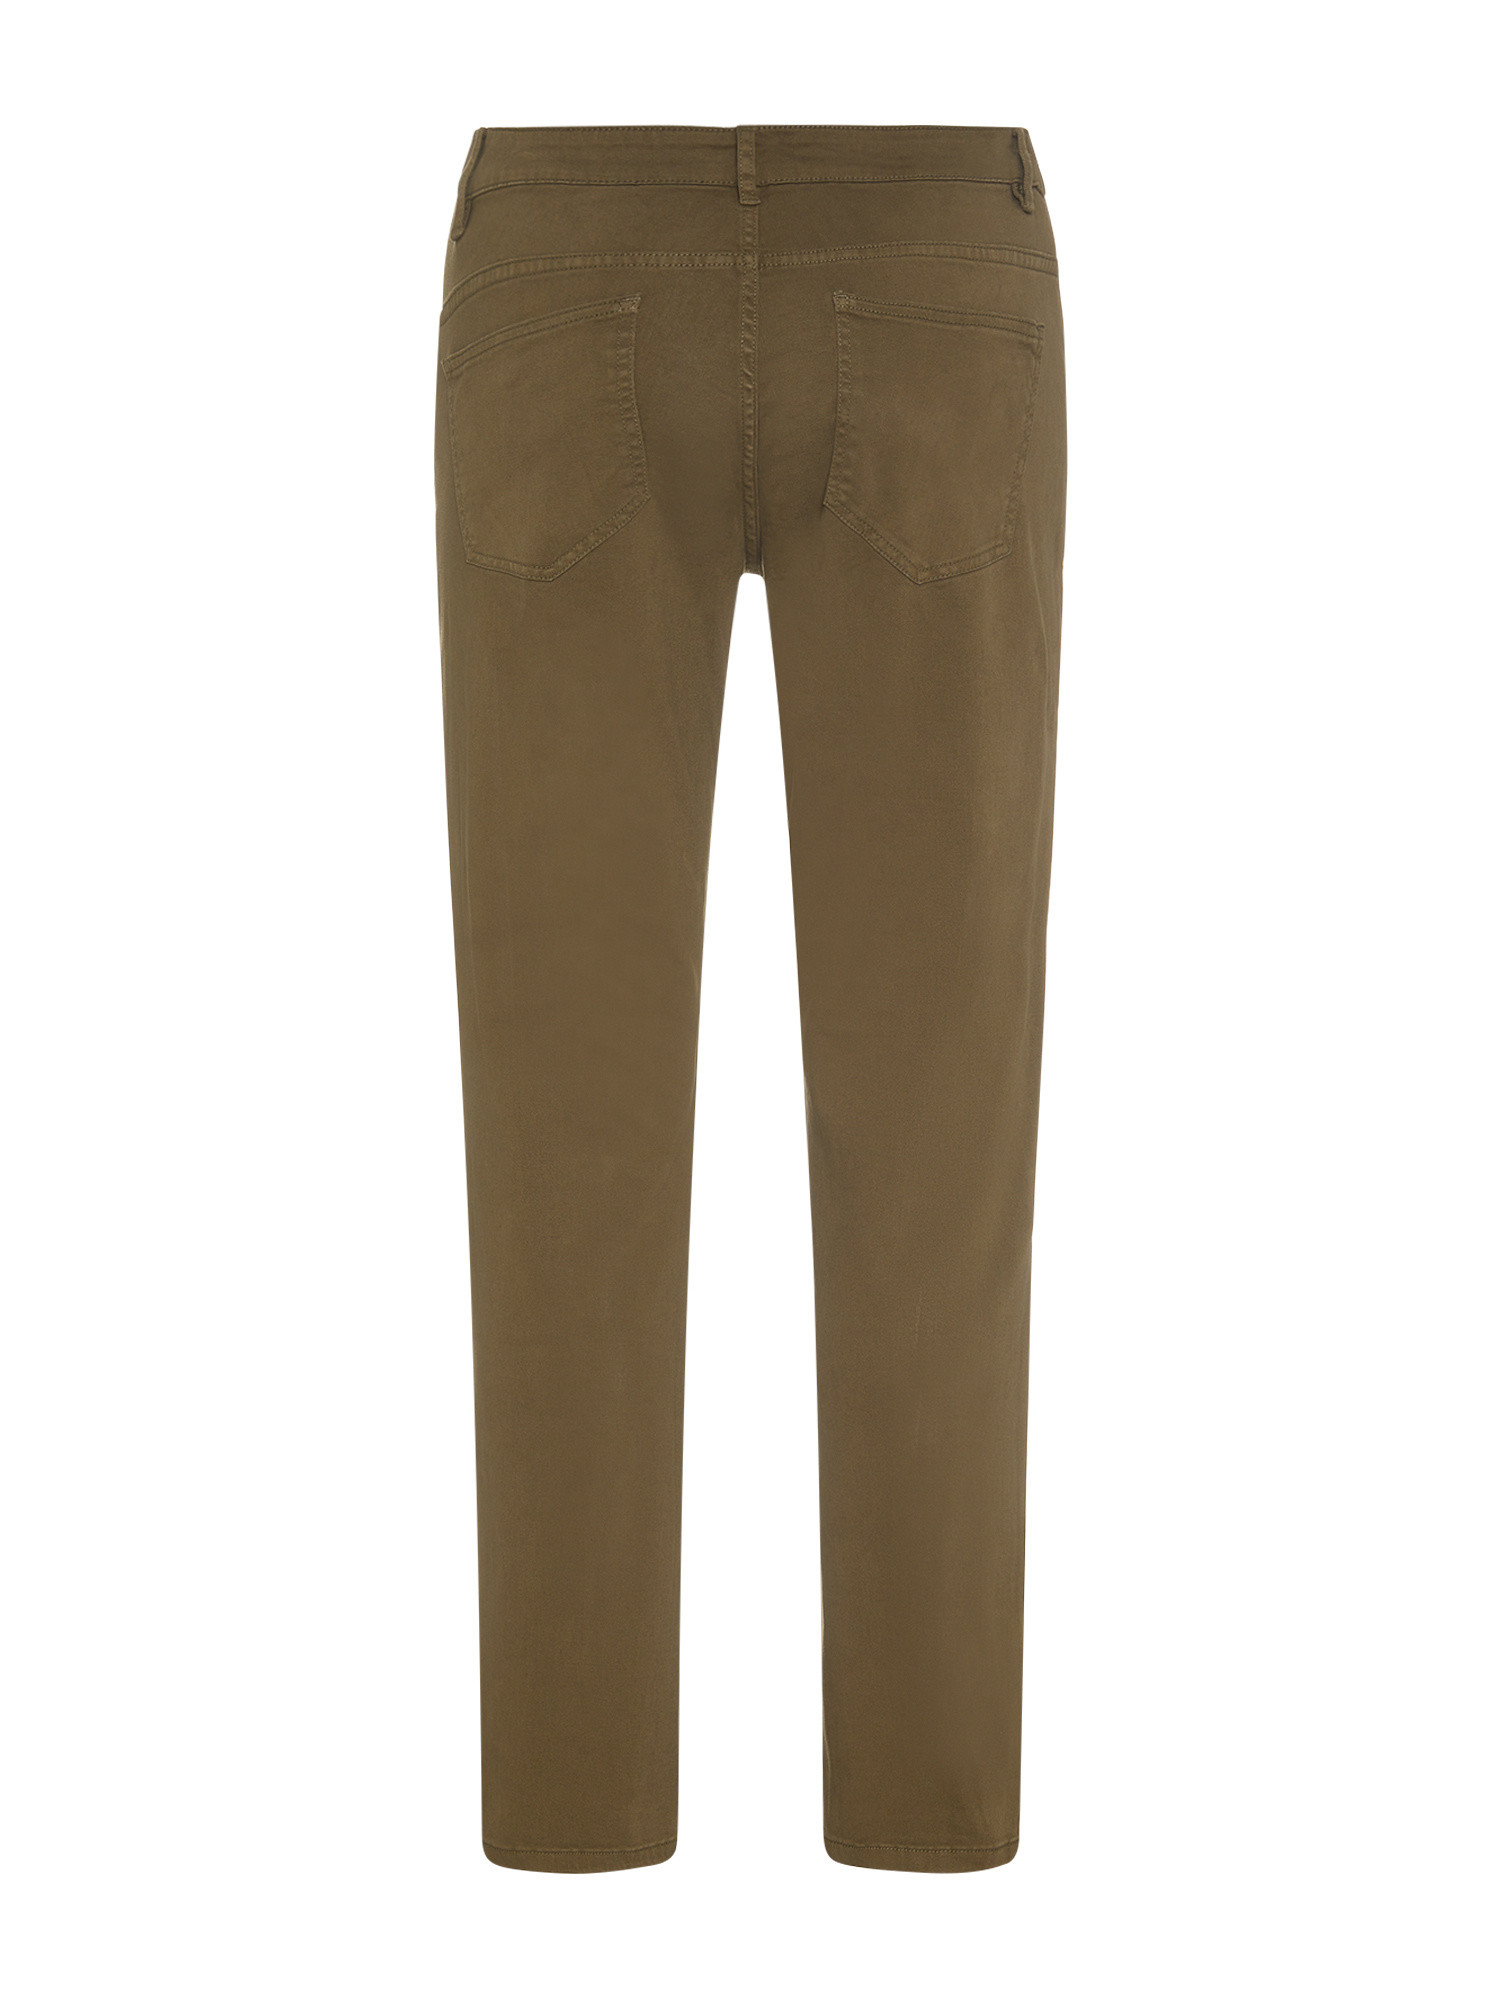 JCT - Pantaloni slim fit cinque tasche, Verde, large image number 1